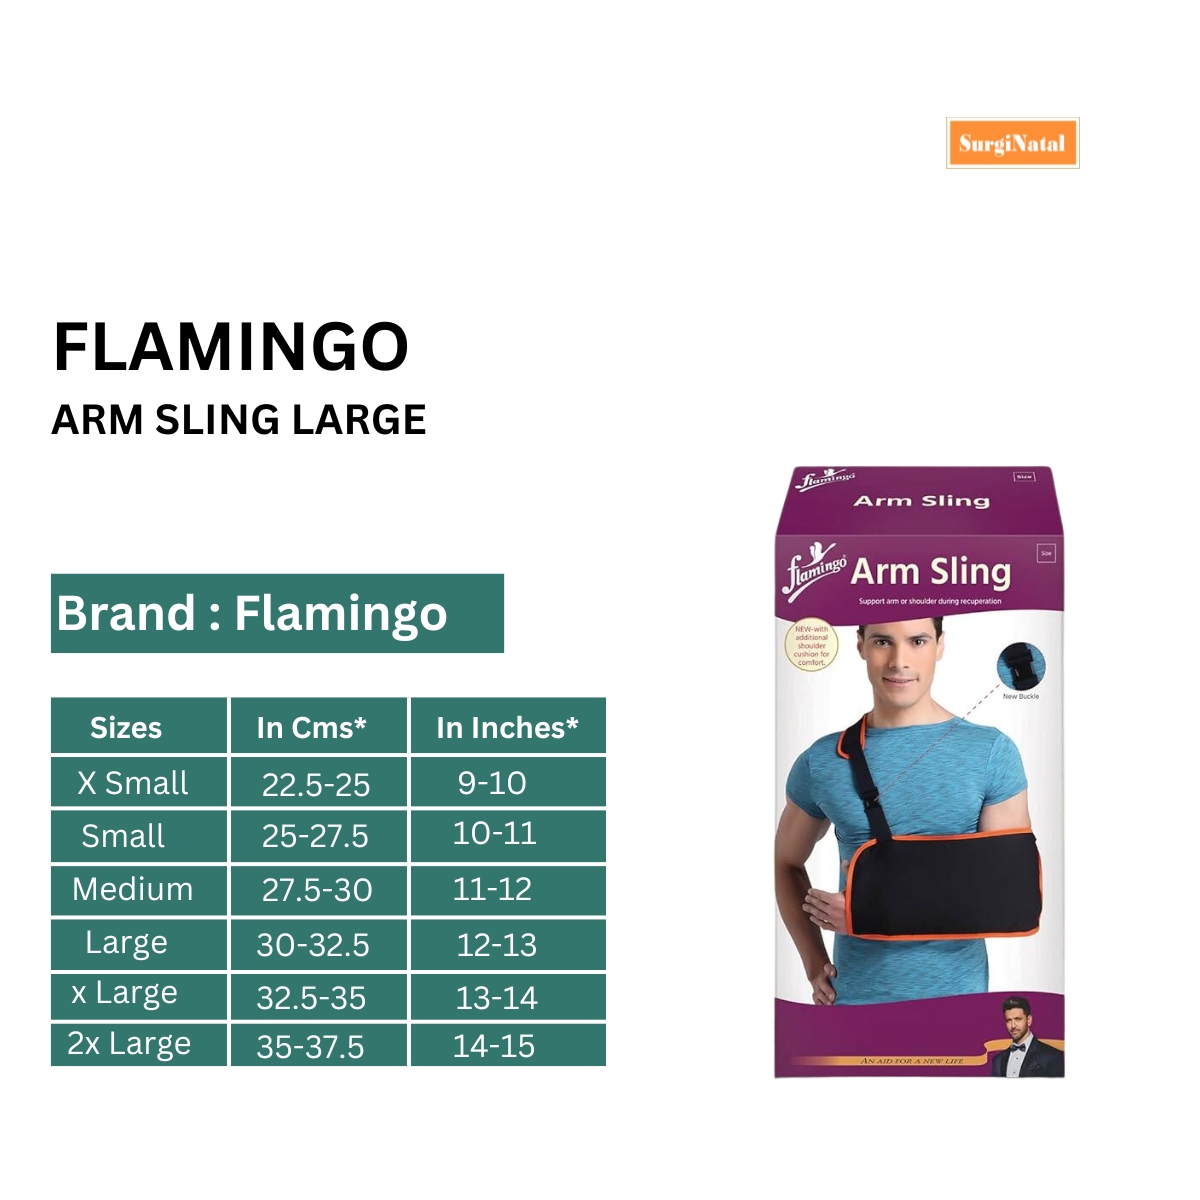 flamingo arm sling large